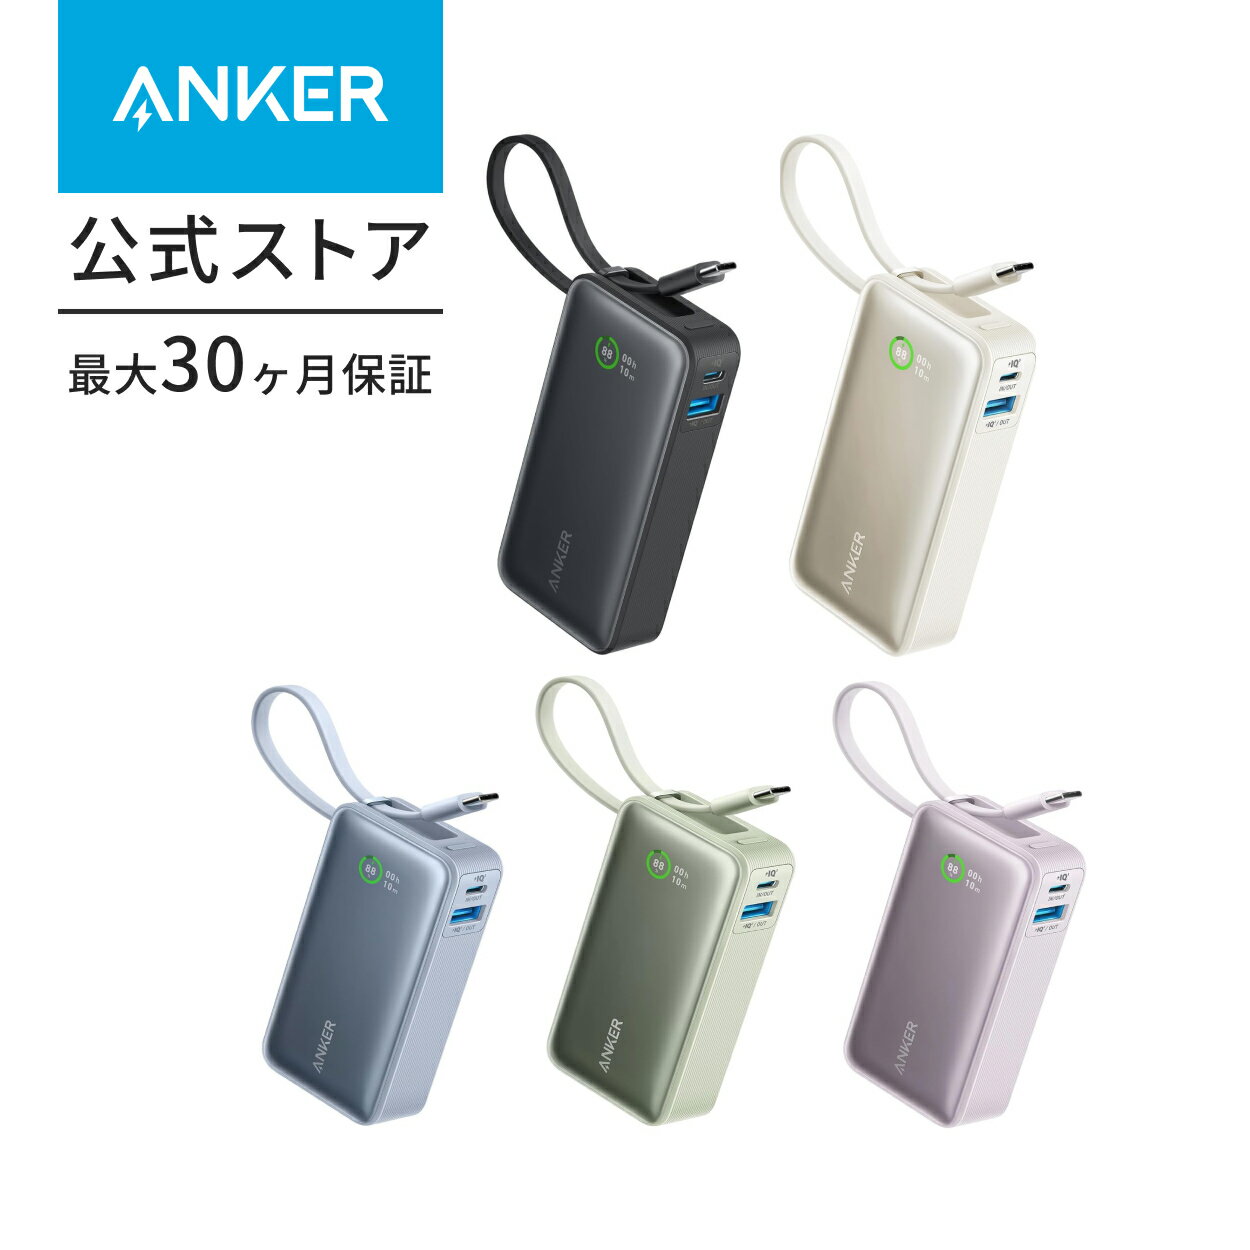 【一部あす楽対応】Anker Nano Power Bank